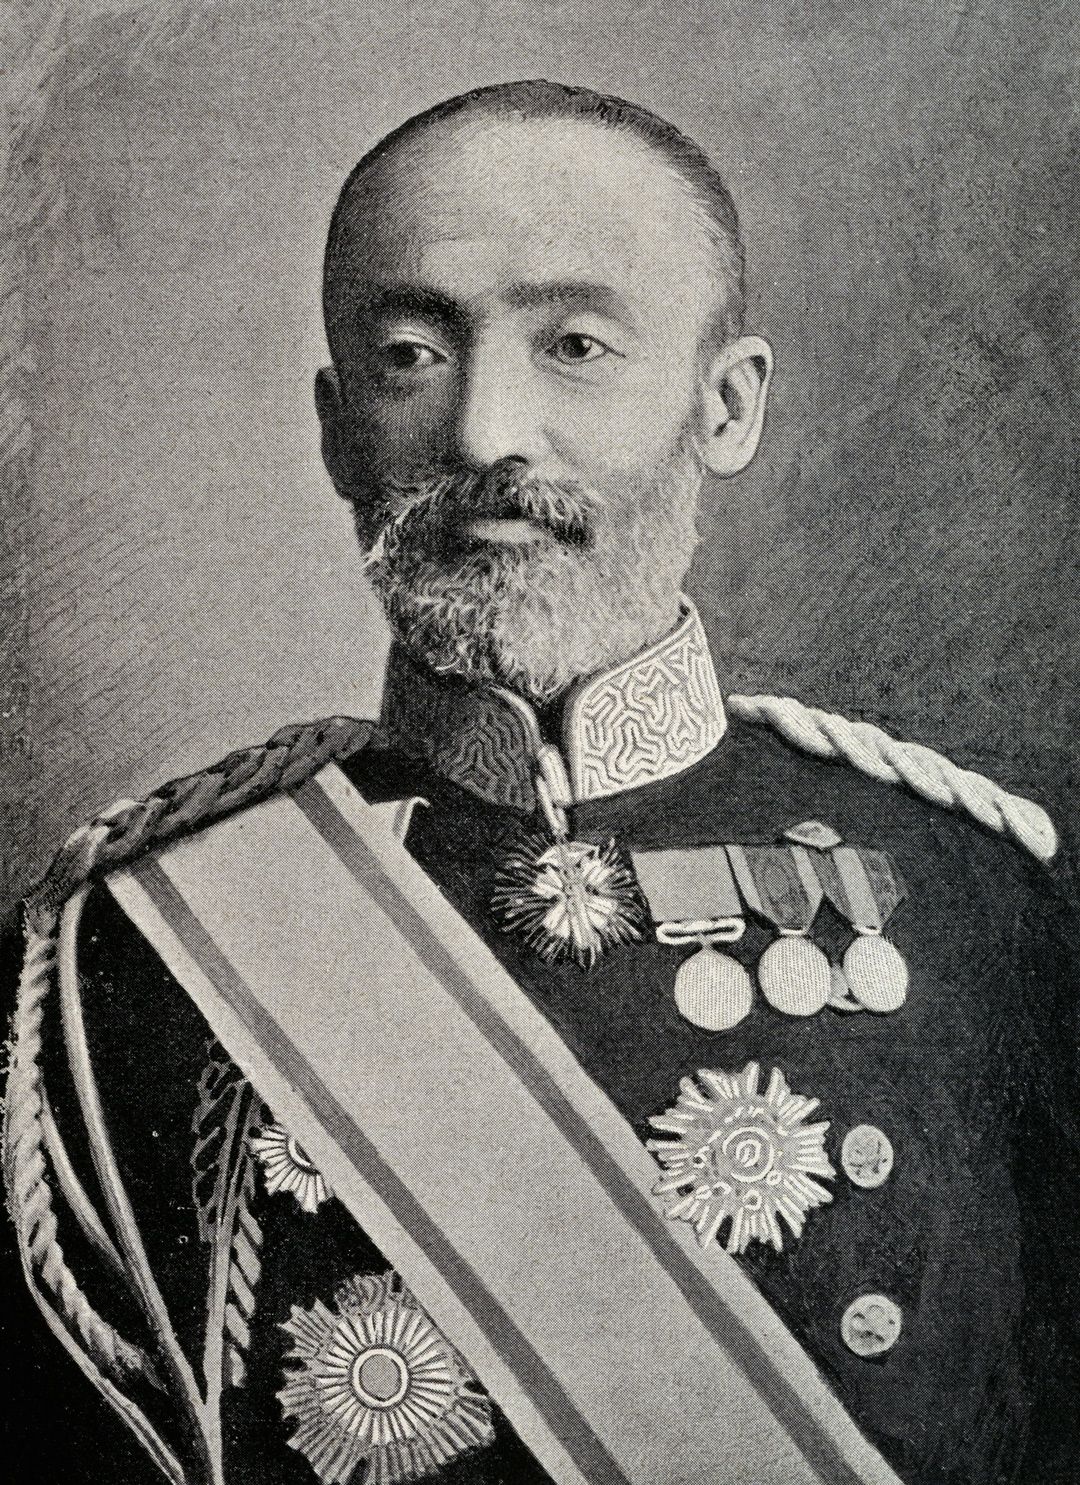 乃木希典（のぎまれすけ）（1849-1912）。1904年、日露戦争で大将に昇格し、軍司令官として旅順を攻略する。明治天皇崩御後、大葬の日に東京の自宅で夫人静子とともに殉死した。